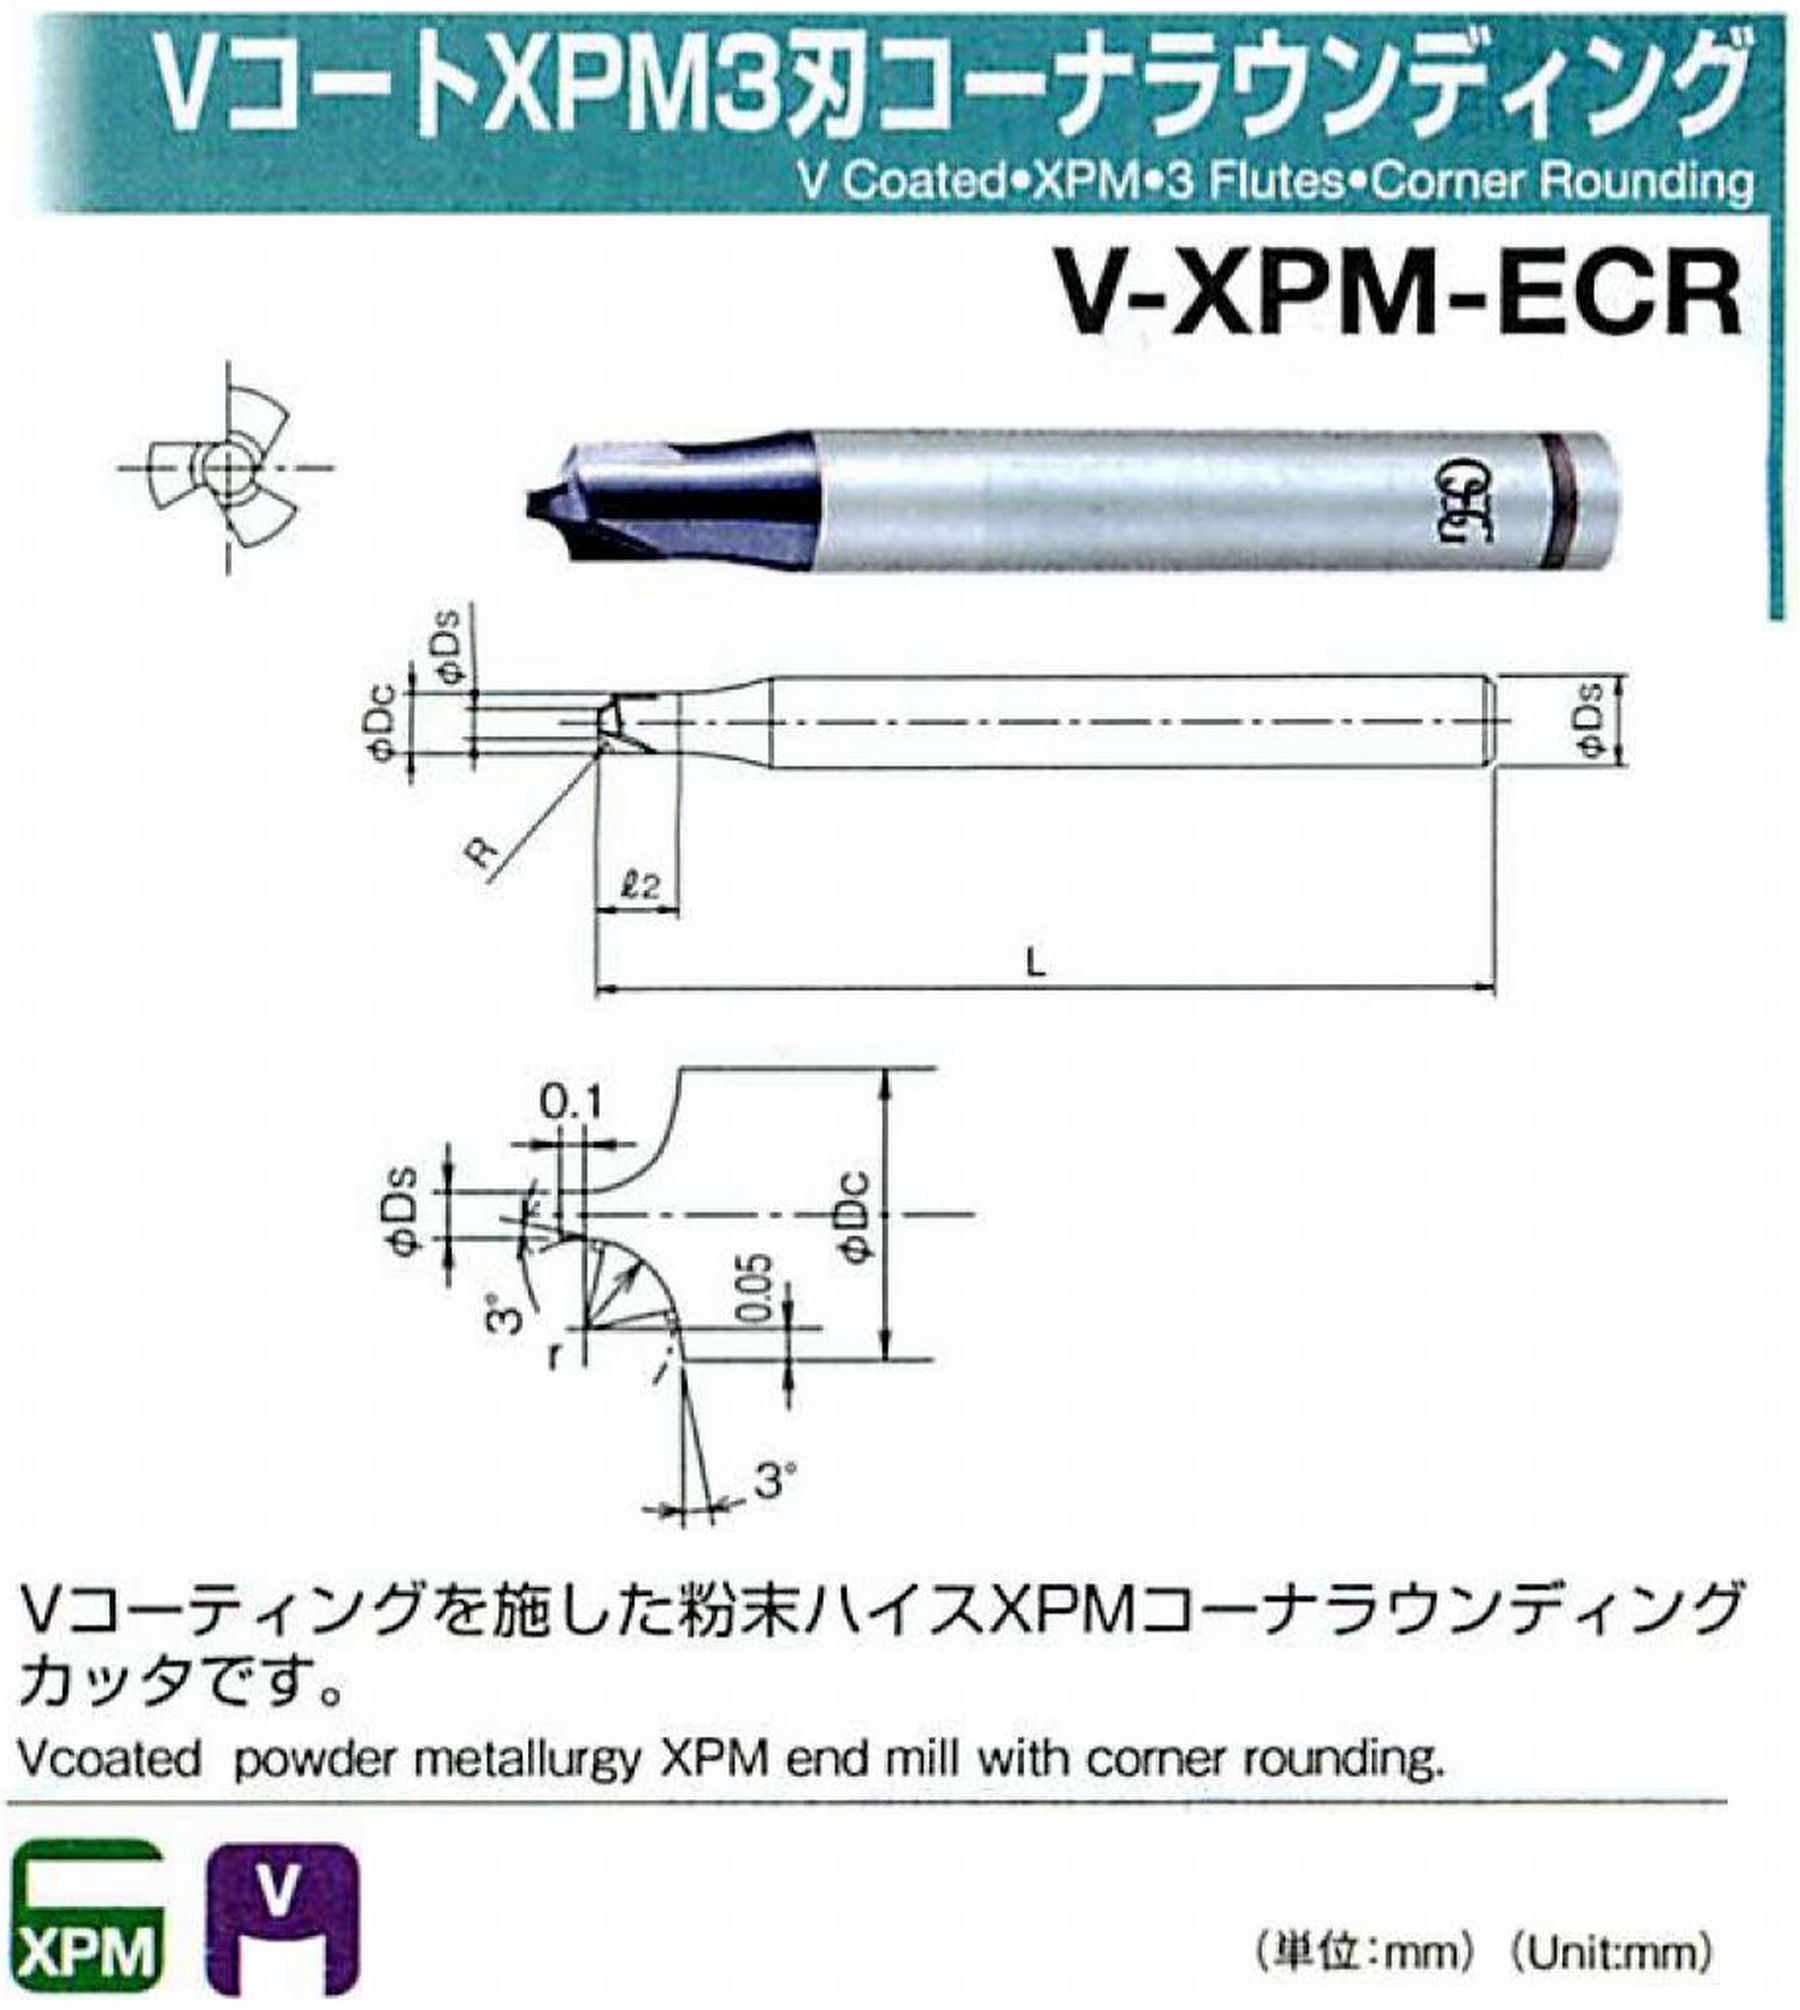 オーエスジー/OSG VコートXPM3刃 コーナラウンディング V-XPM-ECR 先端角×コーナ半径2×R2.5 外径7 全長60 シャンク径8mm 首下長10